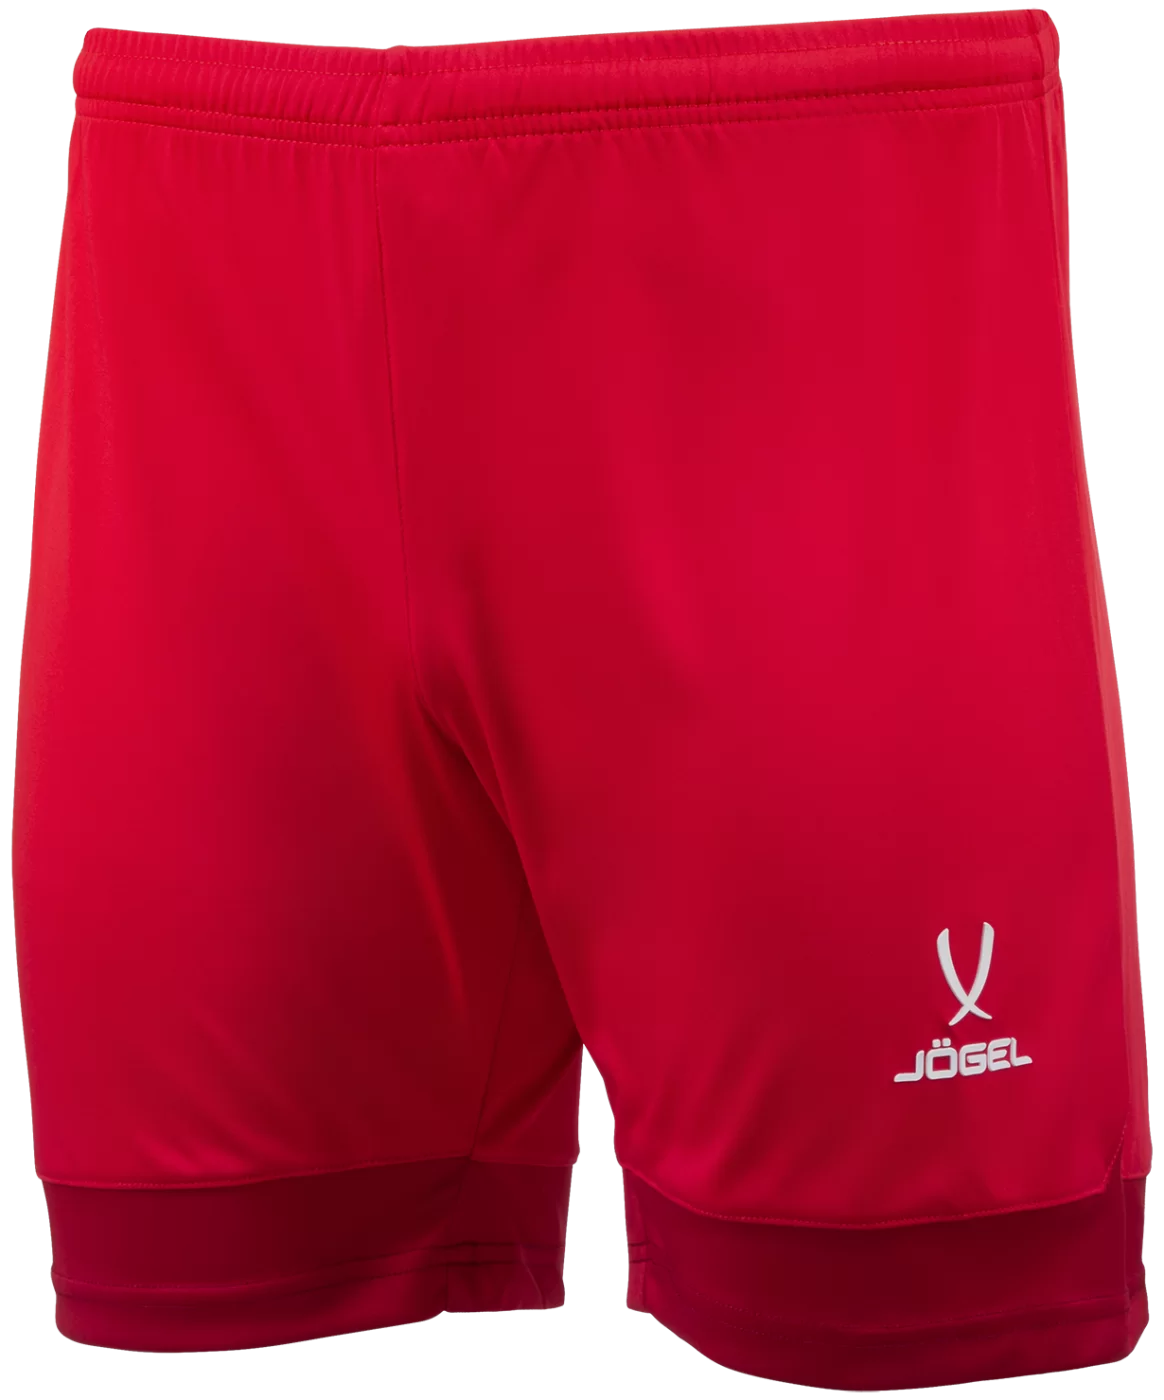 Фото Шорты игровые DIVISION PerFormDRY Union Shorts, красный/ темно-красный/белый, детский со склада магазина СпортСЕ